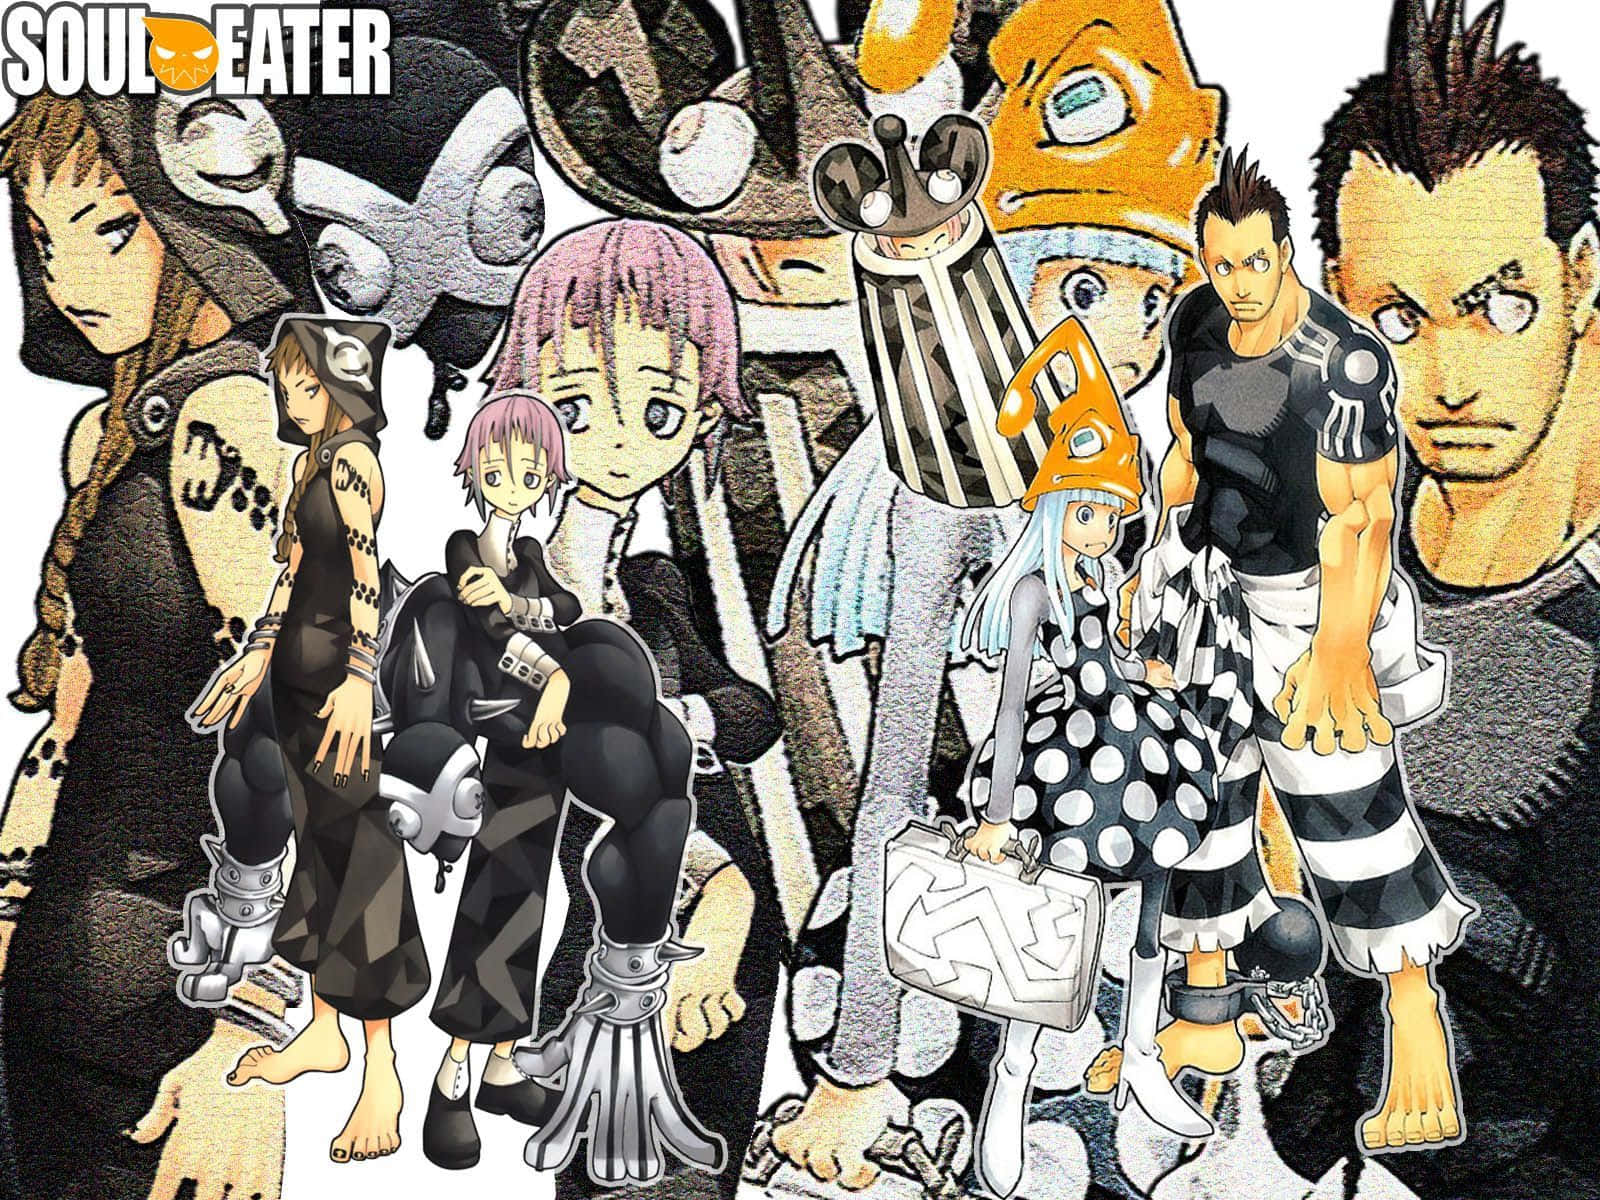 Verfolgedie Abenteuer Der Meister Und Ihrer Waffenpartner In Der Soul Eater Mangaserie! Wallpaper